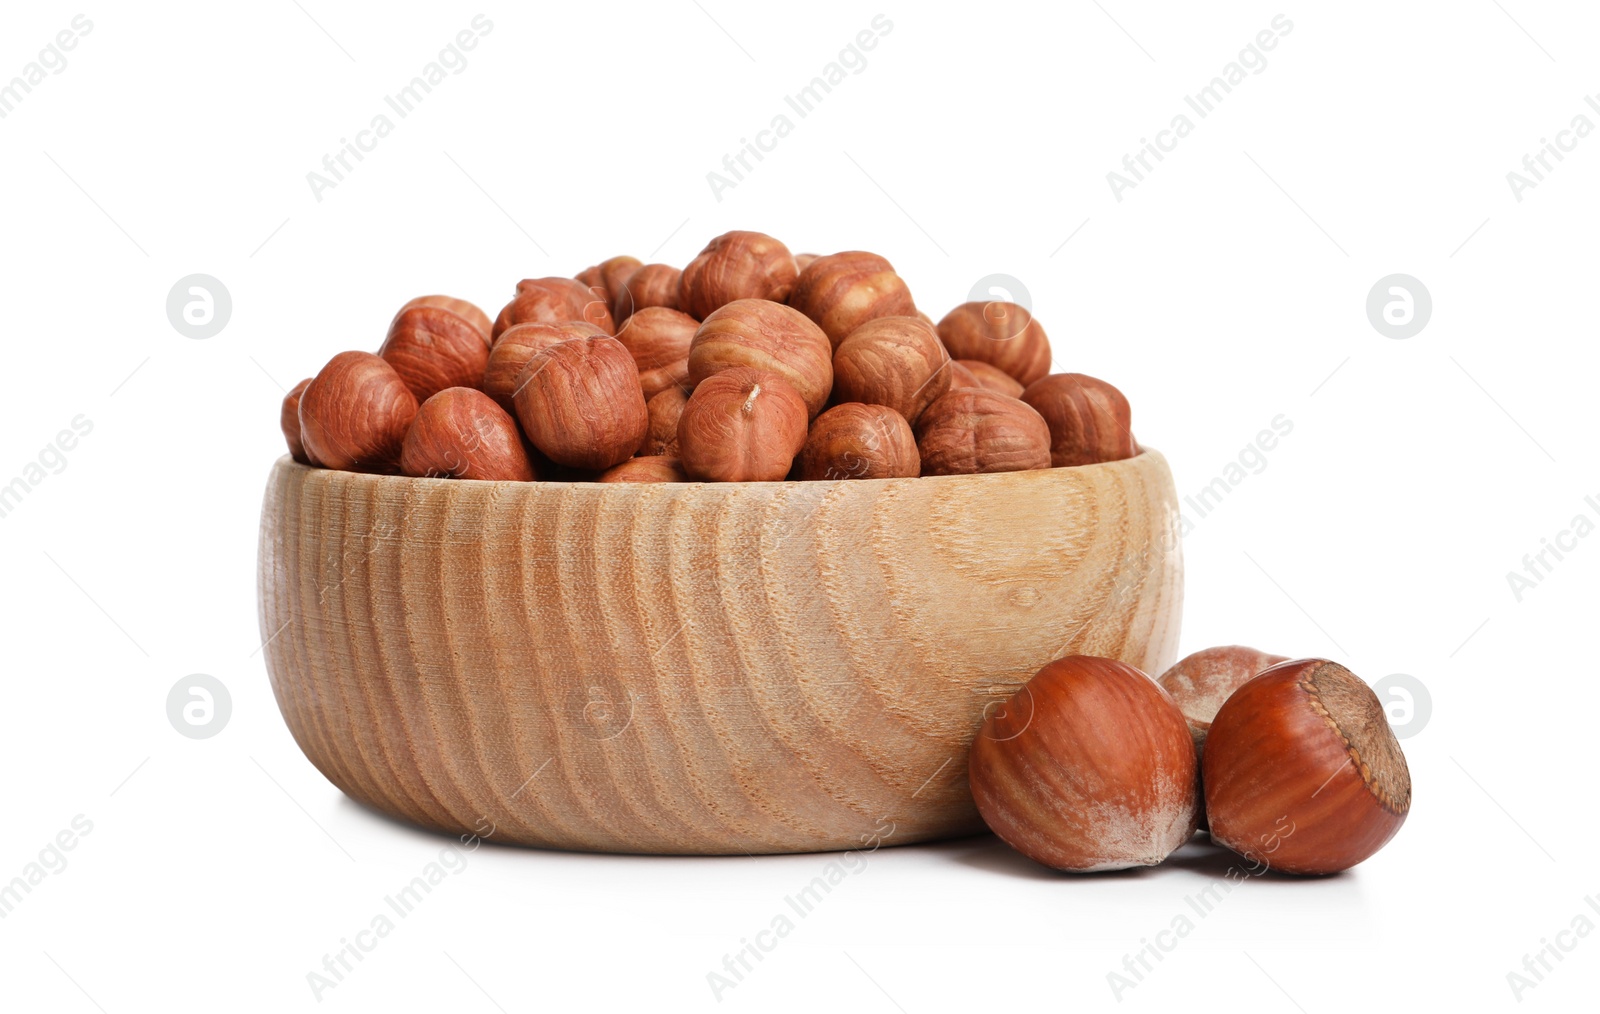 Photo of Bowl with tasty organic hazelnuts on white background